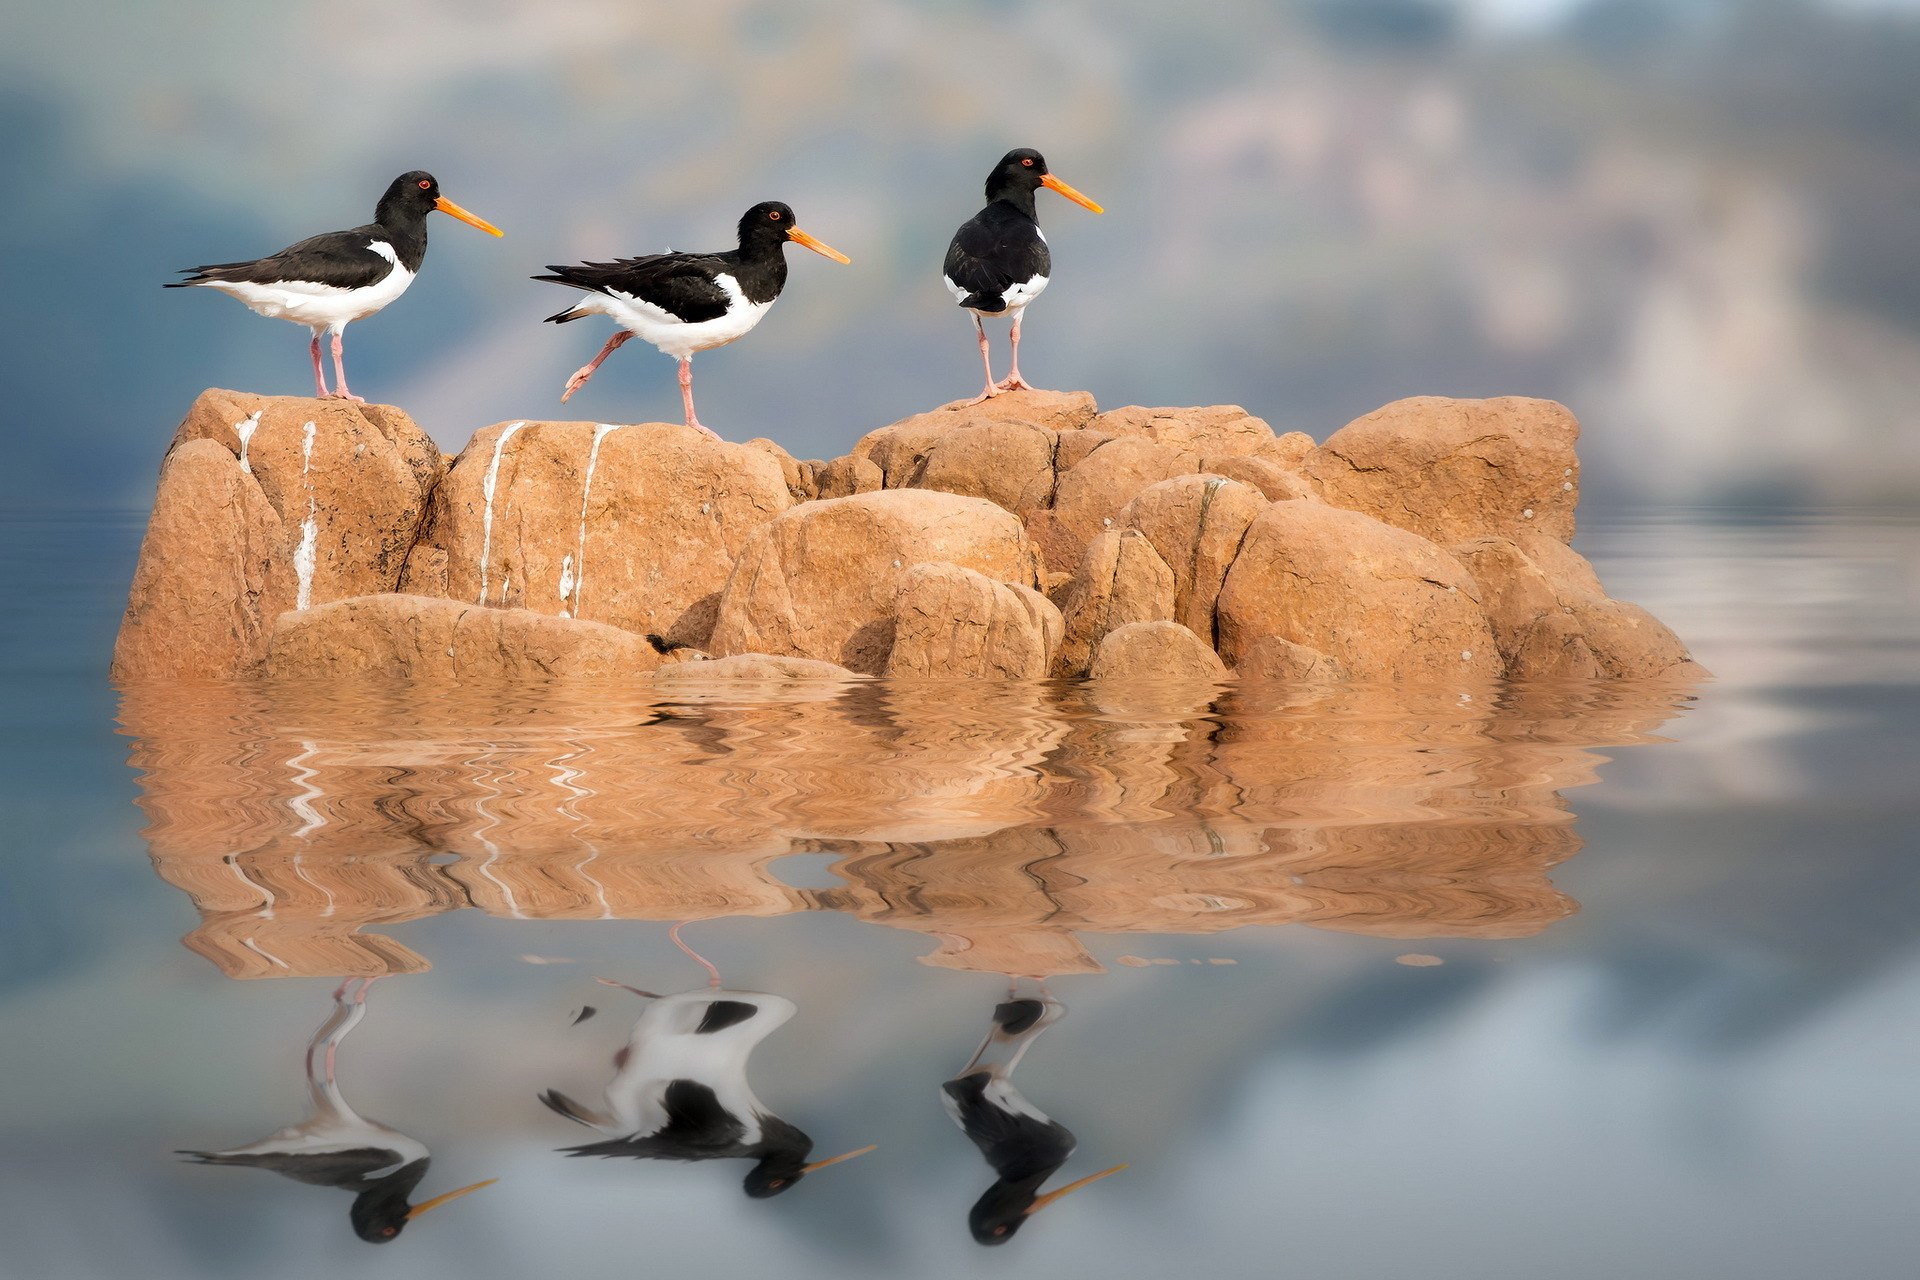 Птичка вода. Птицы Кипра. Животные в отражении воды. Птицы обитающие на скалах. Птицы на воде.